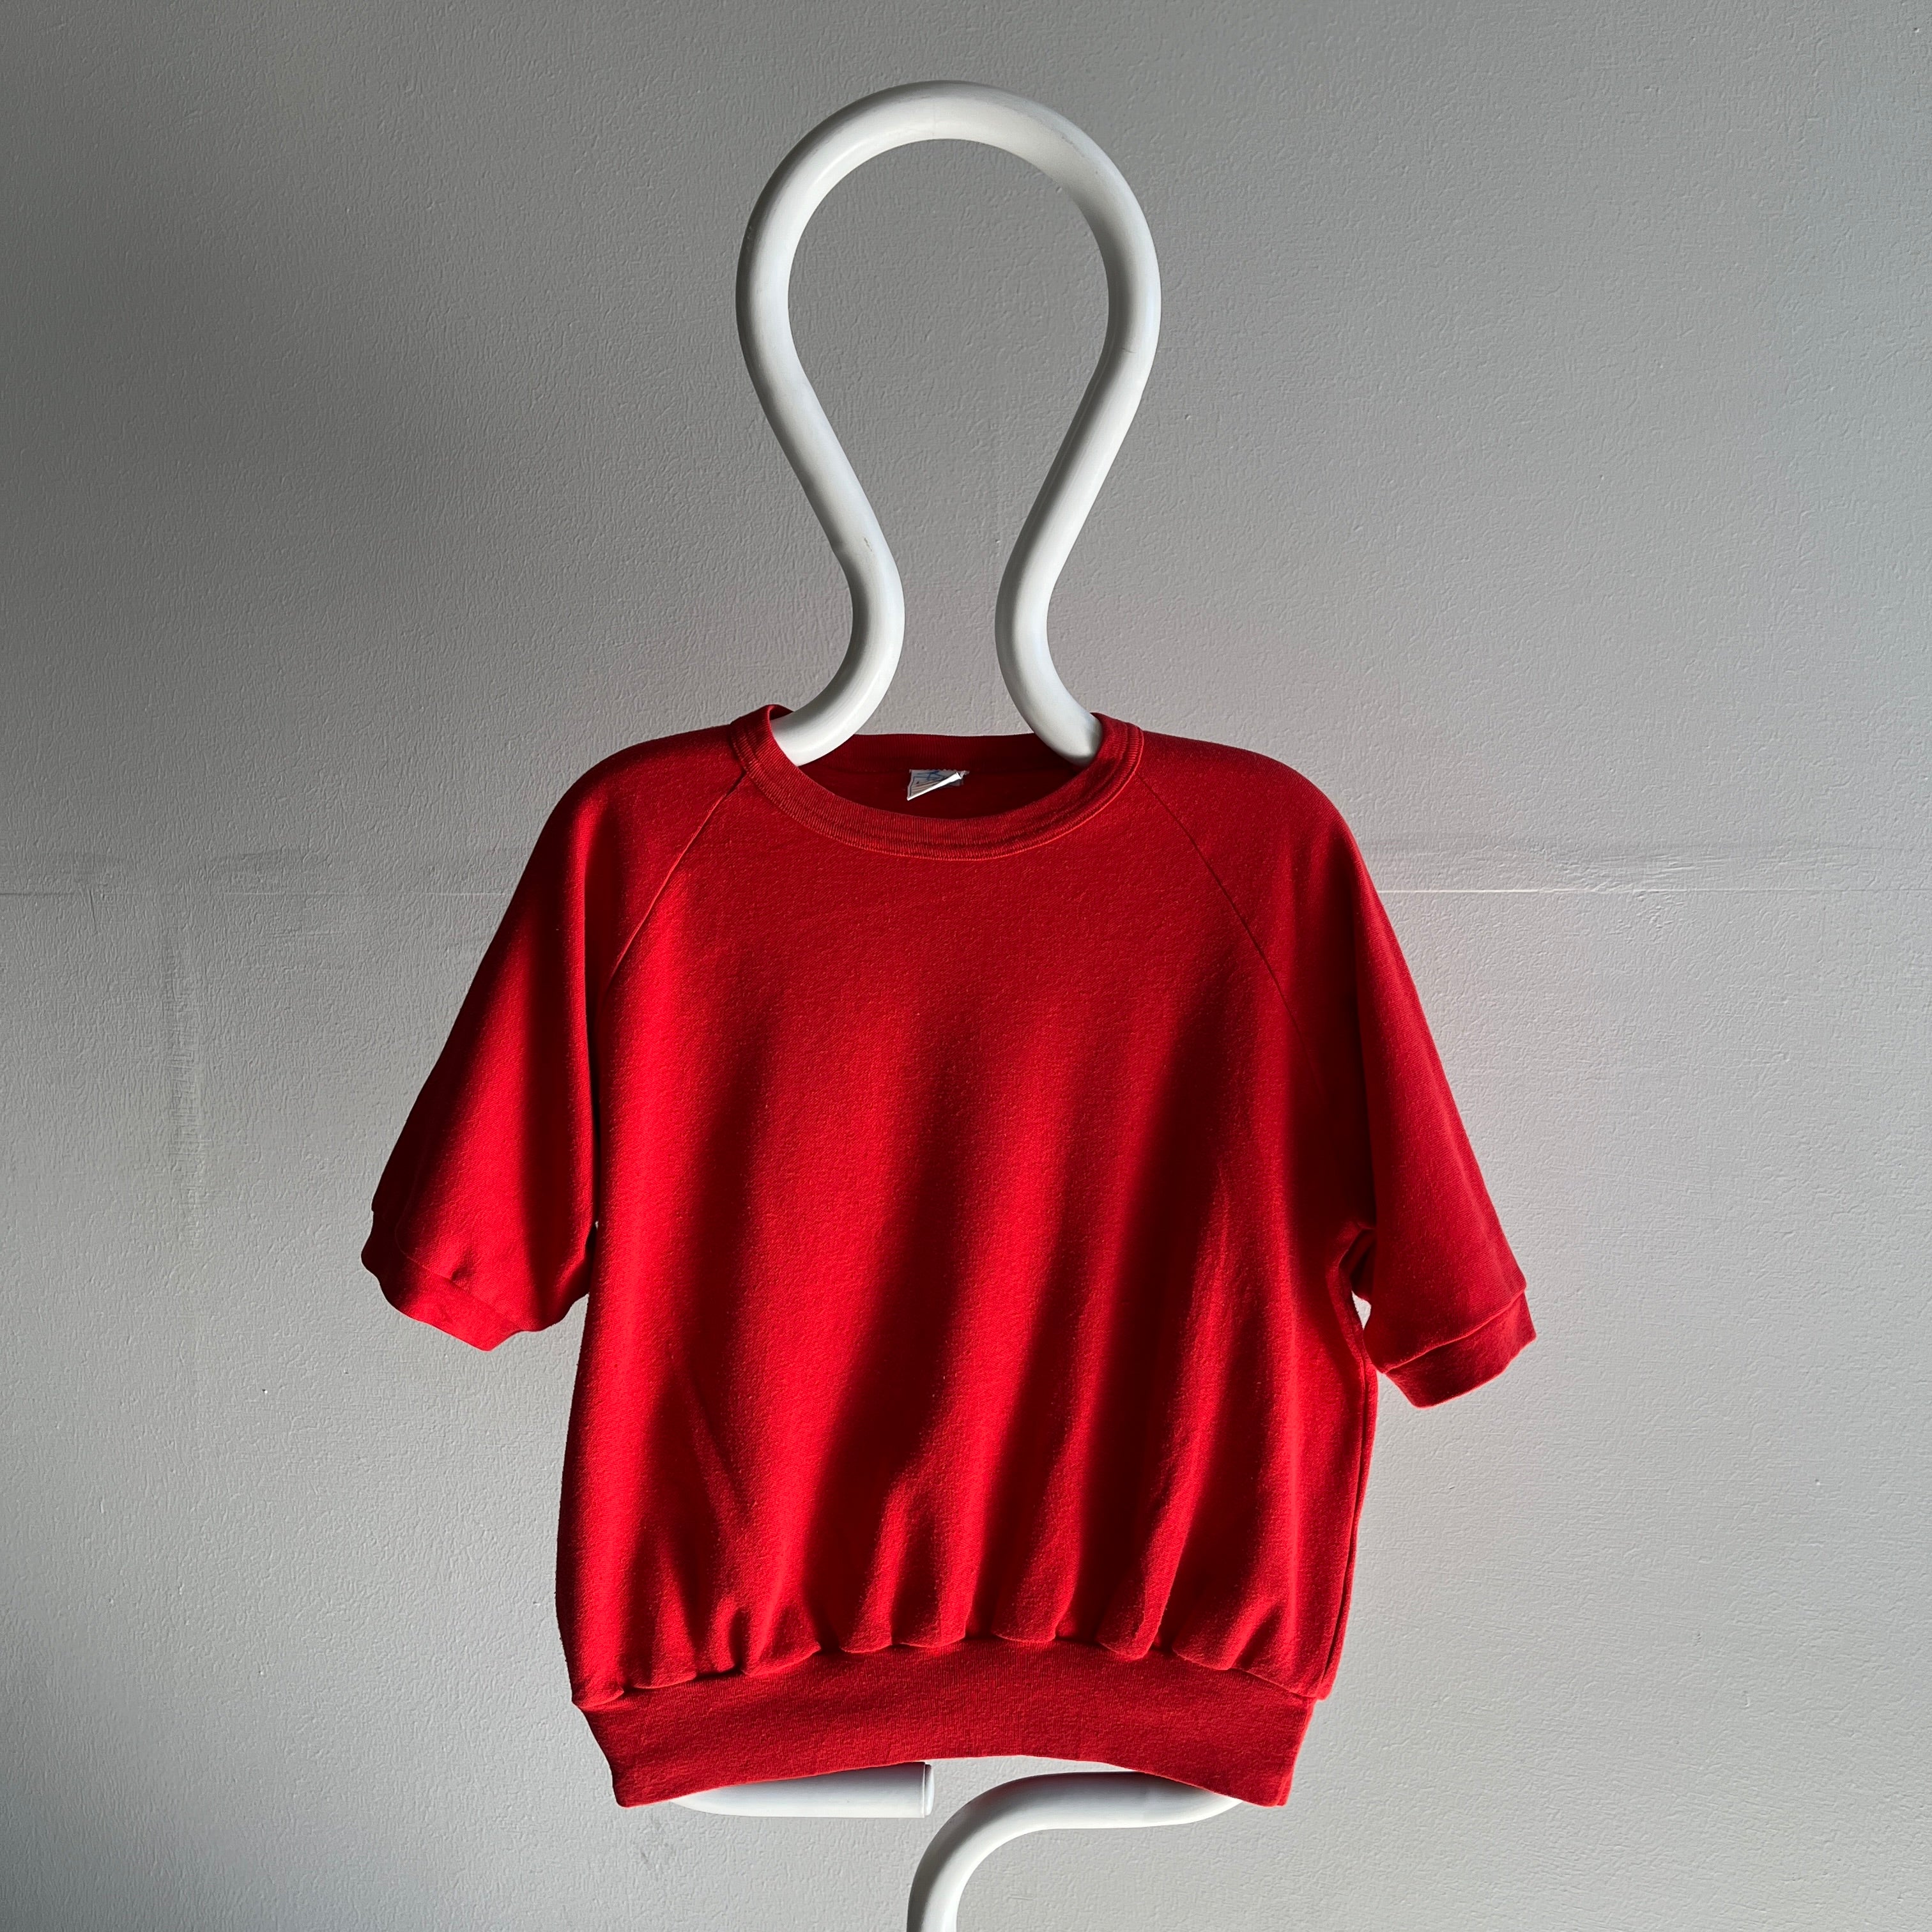 1980s Jersey (T-Shirt) Warm Up